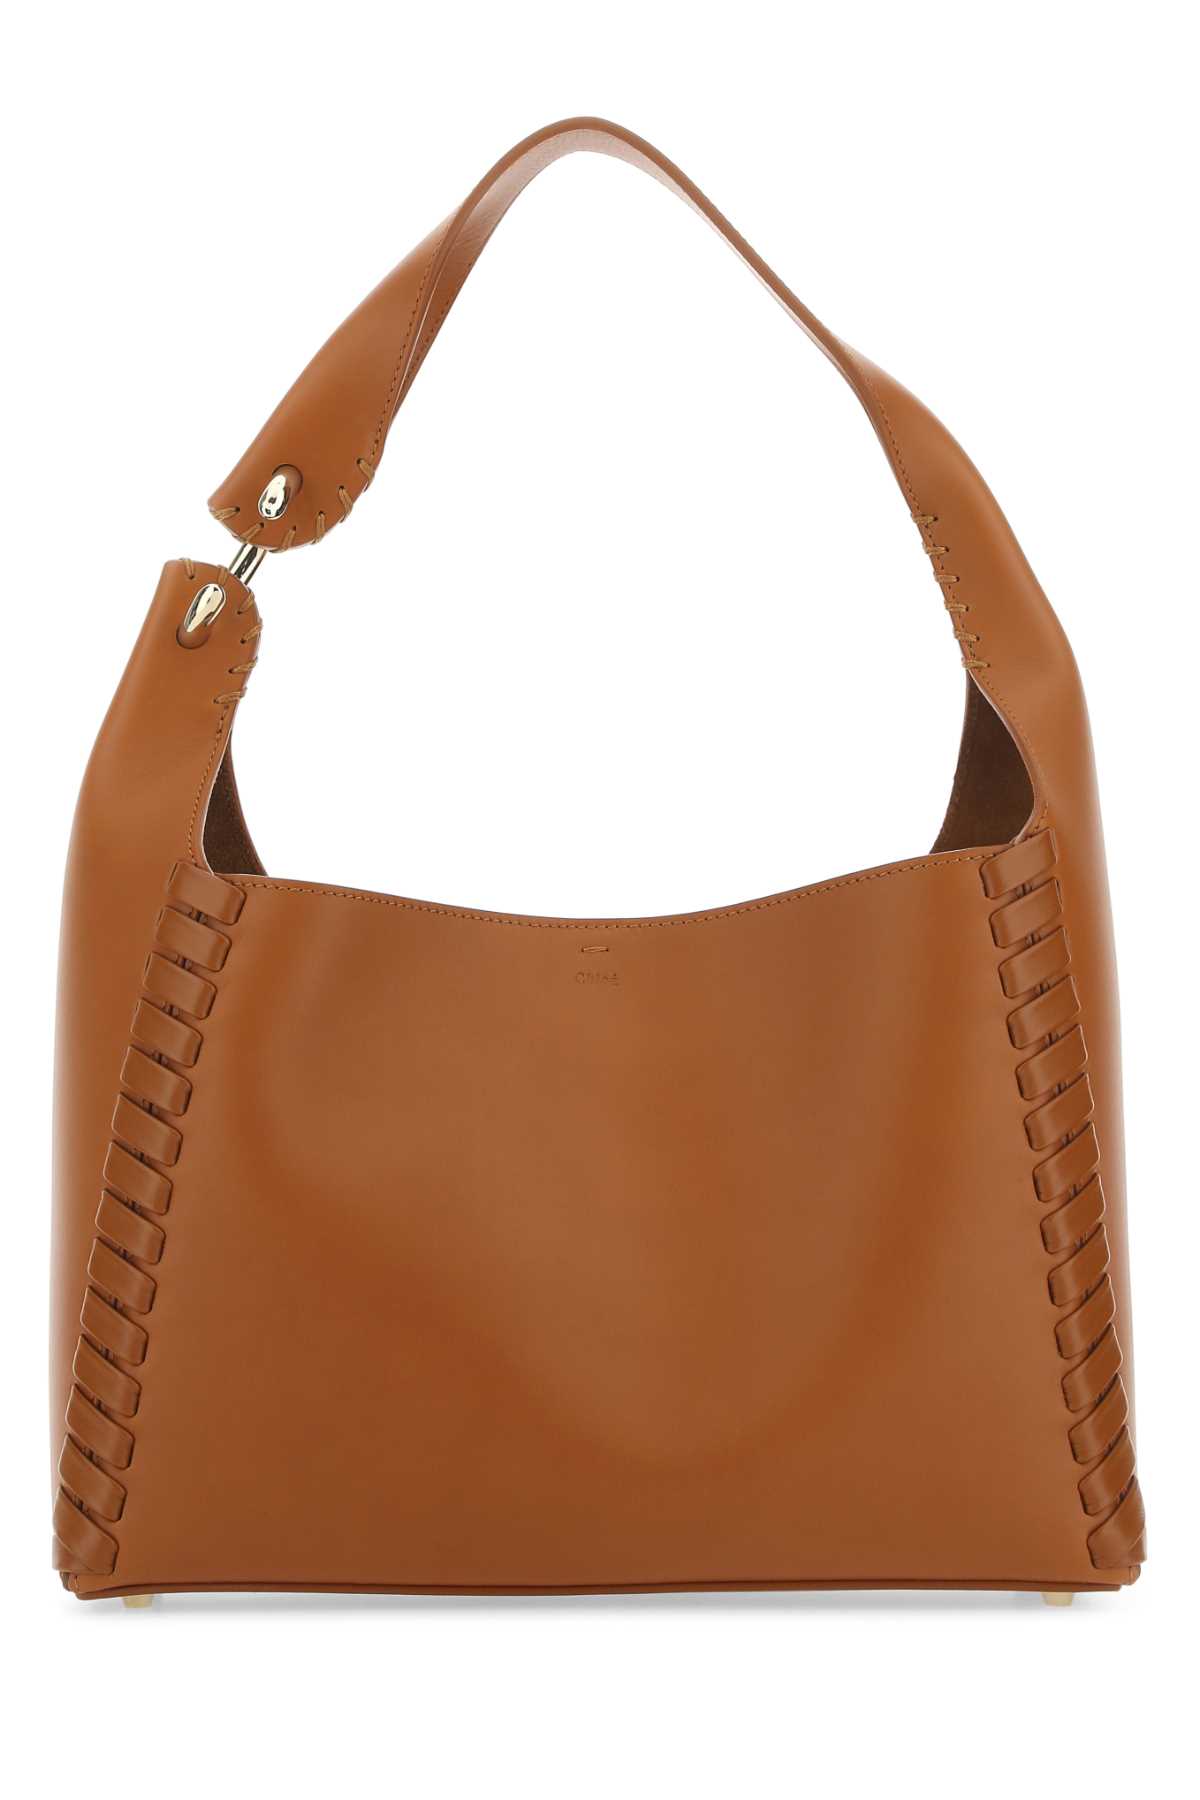 Chloé Caramel Leather Mate Shoulder Bag